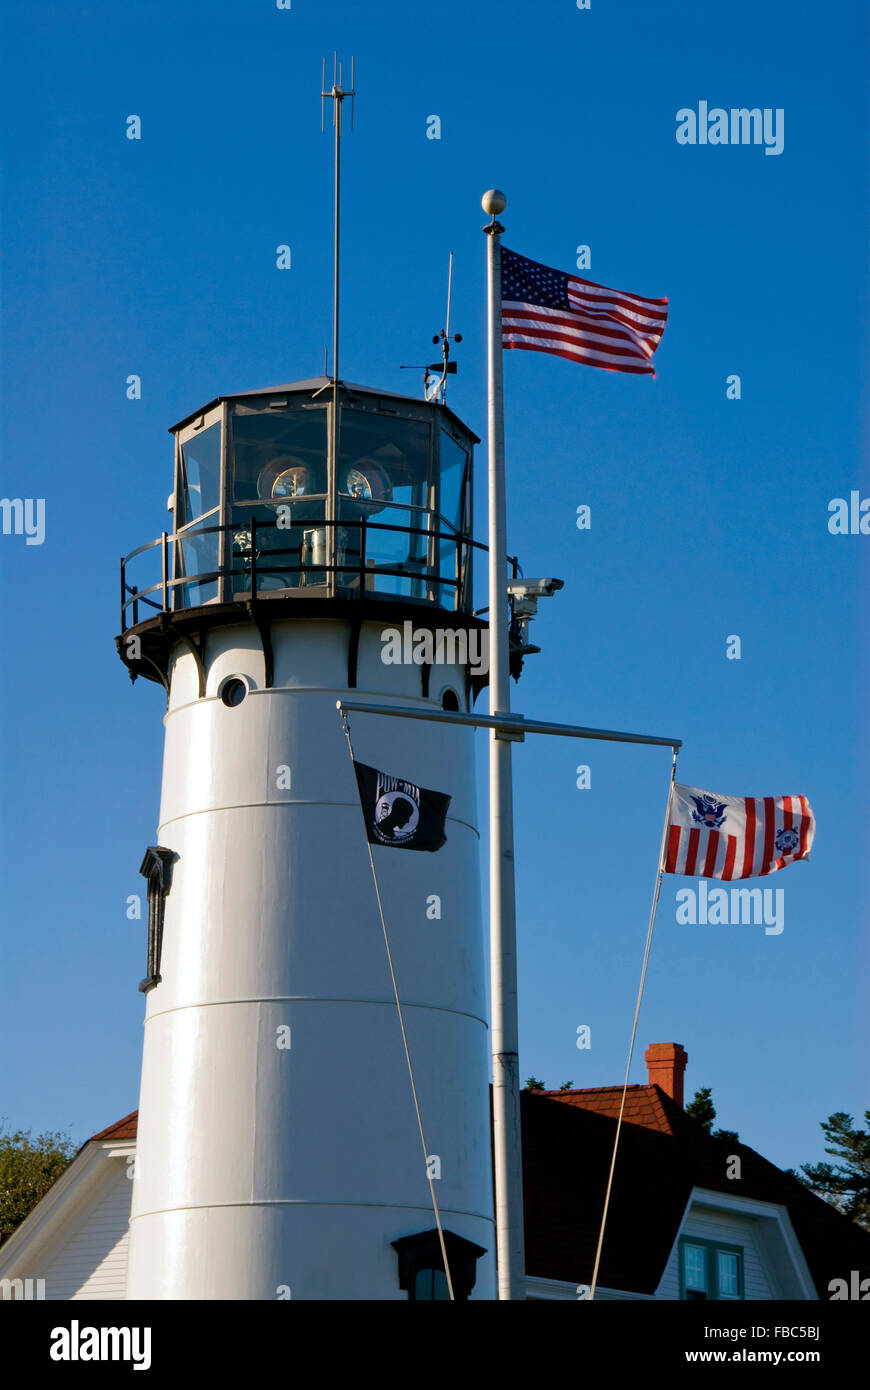 Chatham Lighthouse con sus banderas americanas en Cape Cod tiene una singular torre octogonal estructura y es una de las atracciones de verano de Cape Cod. Foto de stock